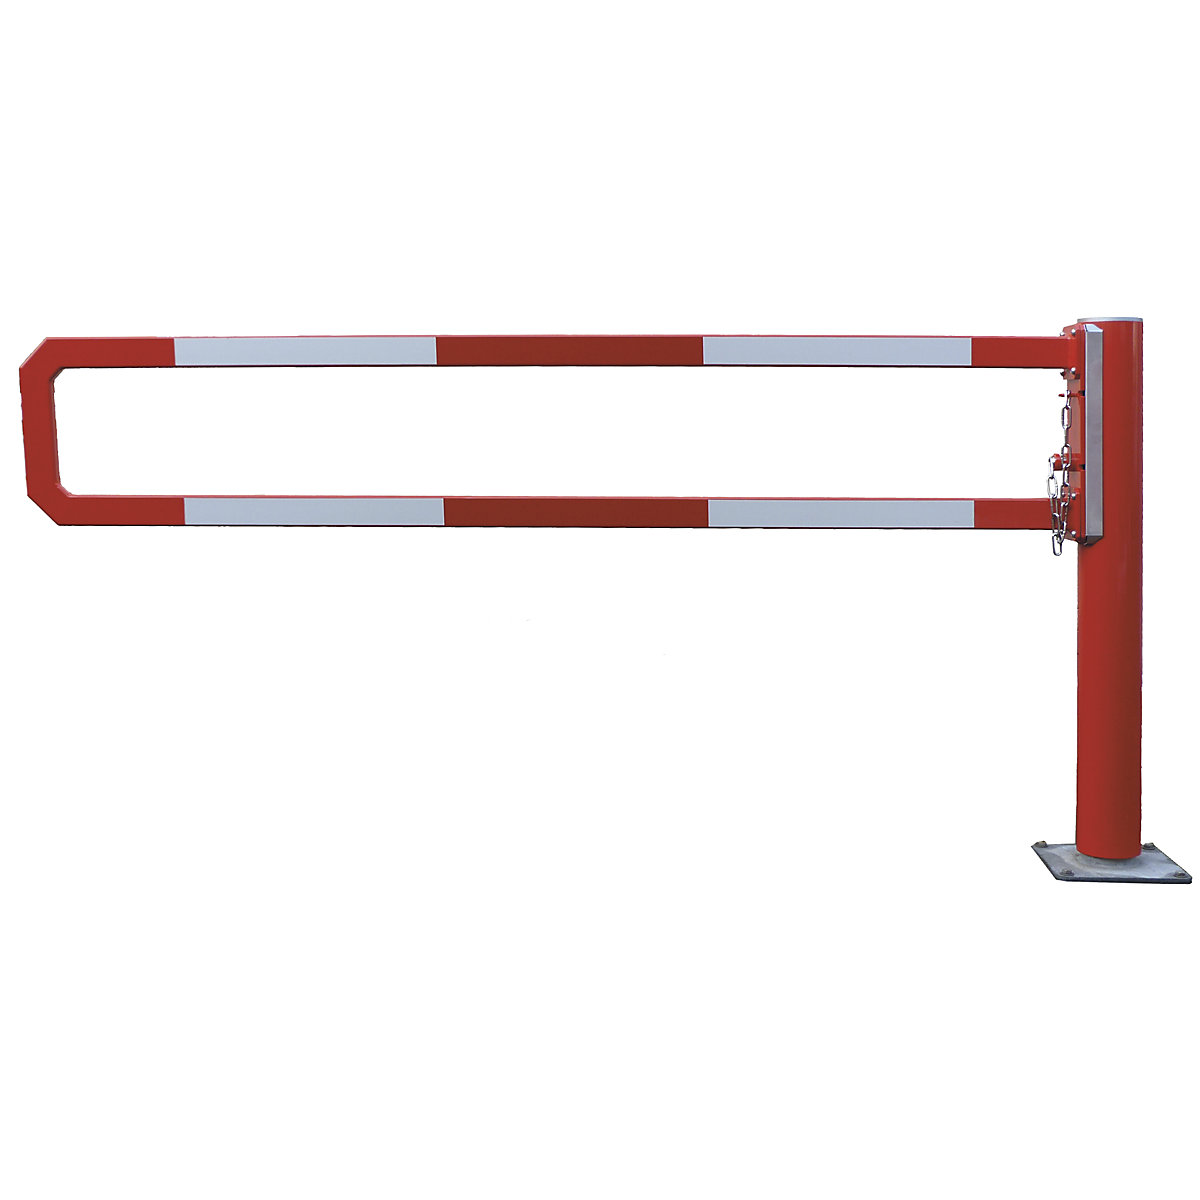 Barrière manuelle tournante – Mannus, largeur utile 2,5 m, galvanisé à chaud avec peinture époxy rouge-3